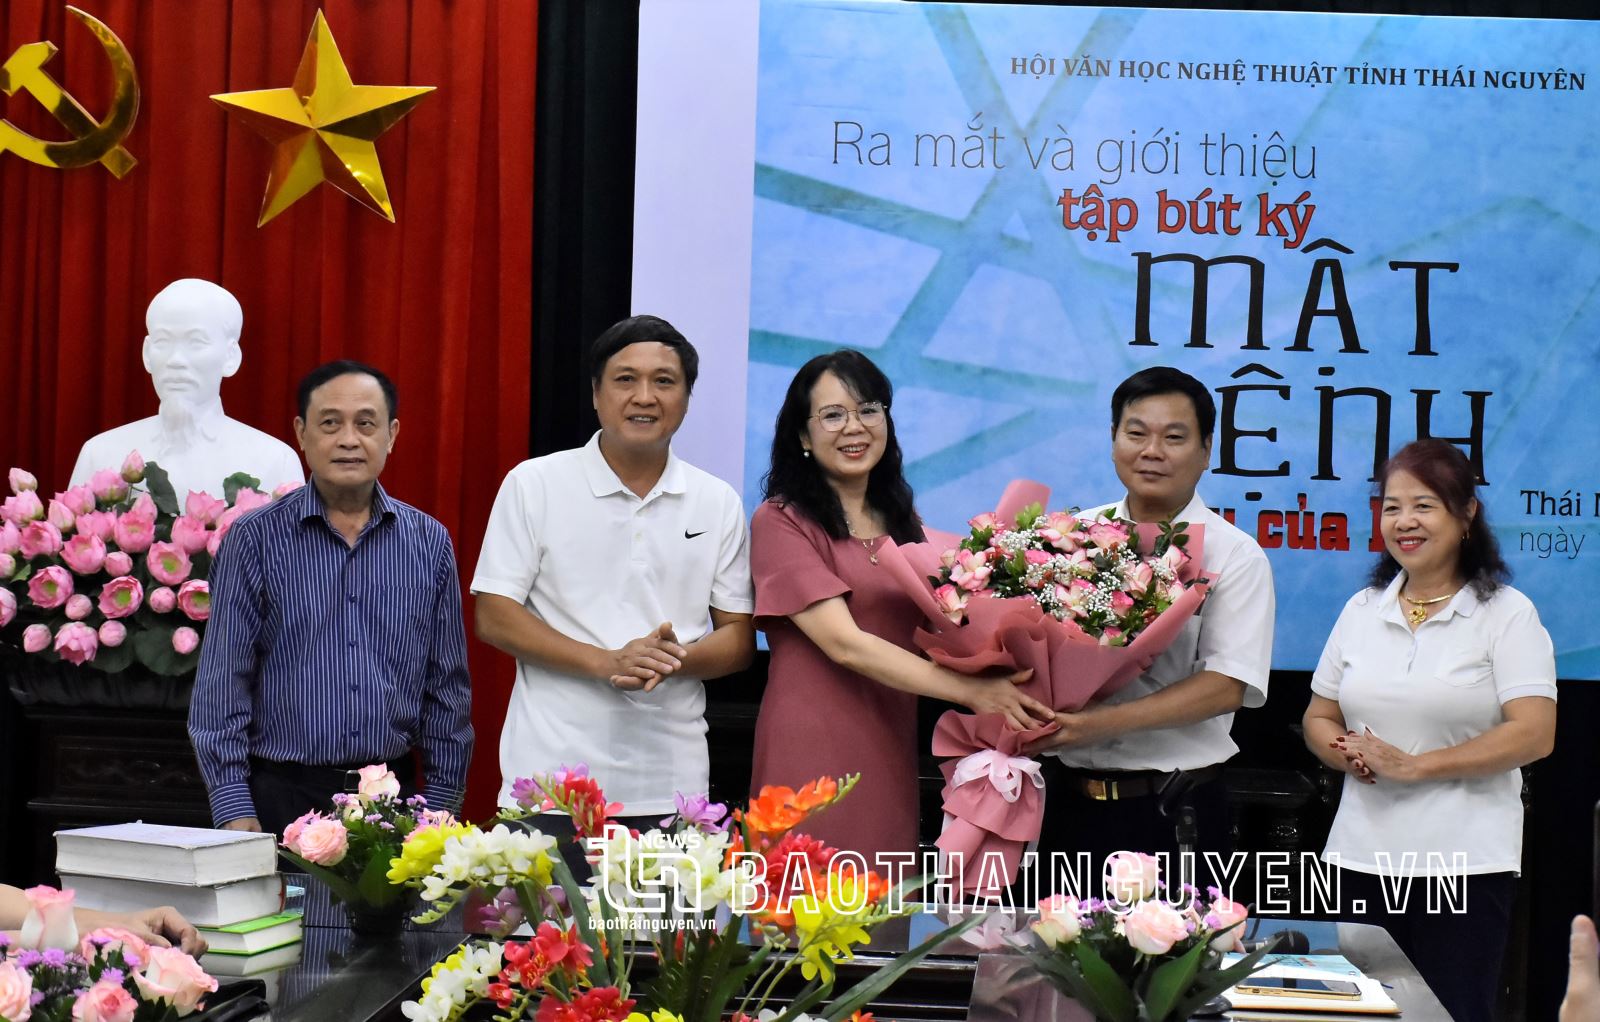 Lãnh đạo Hội Văn học nghệ thuật tỉnh tặng hoa cho đại diện các tác giả cuốn sách "Mật lệnh màu của lửa".